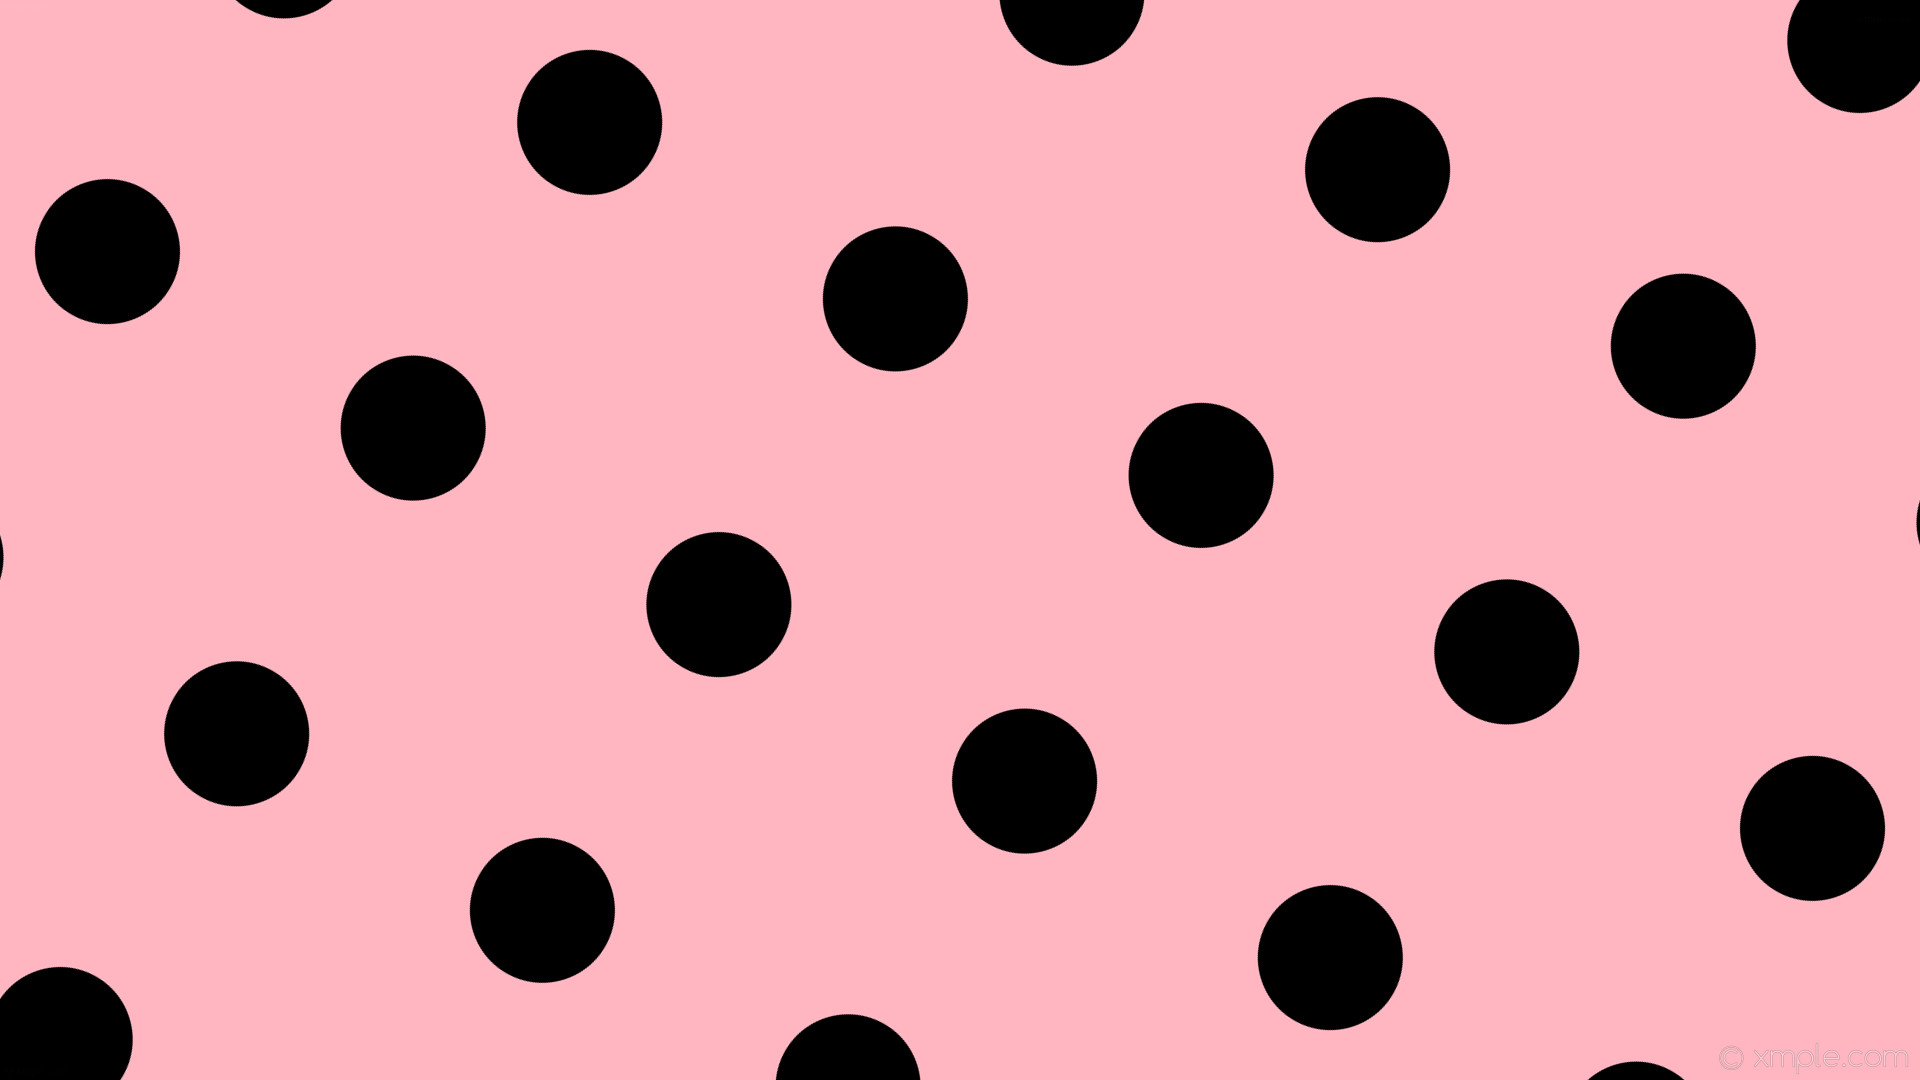 1920x1080 wallpaper black pink polka spots dots light pink #ffb6c1 #000000 240Â° 145px  353px